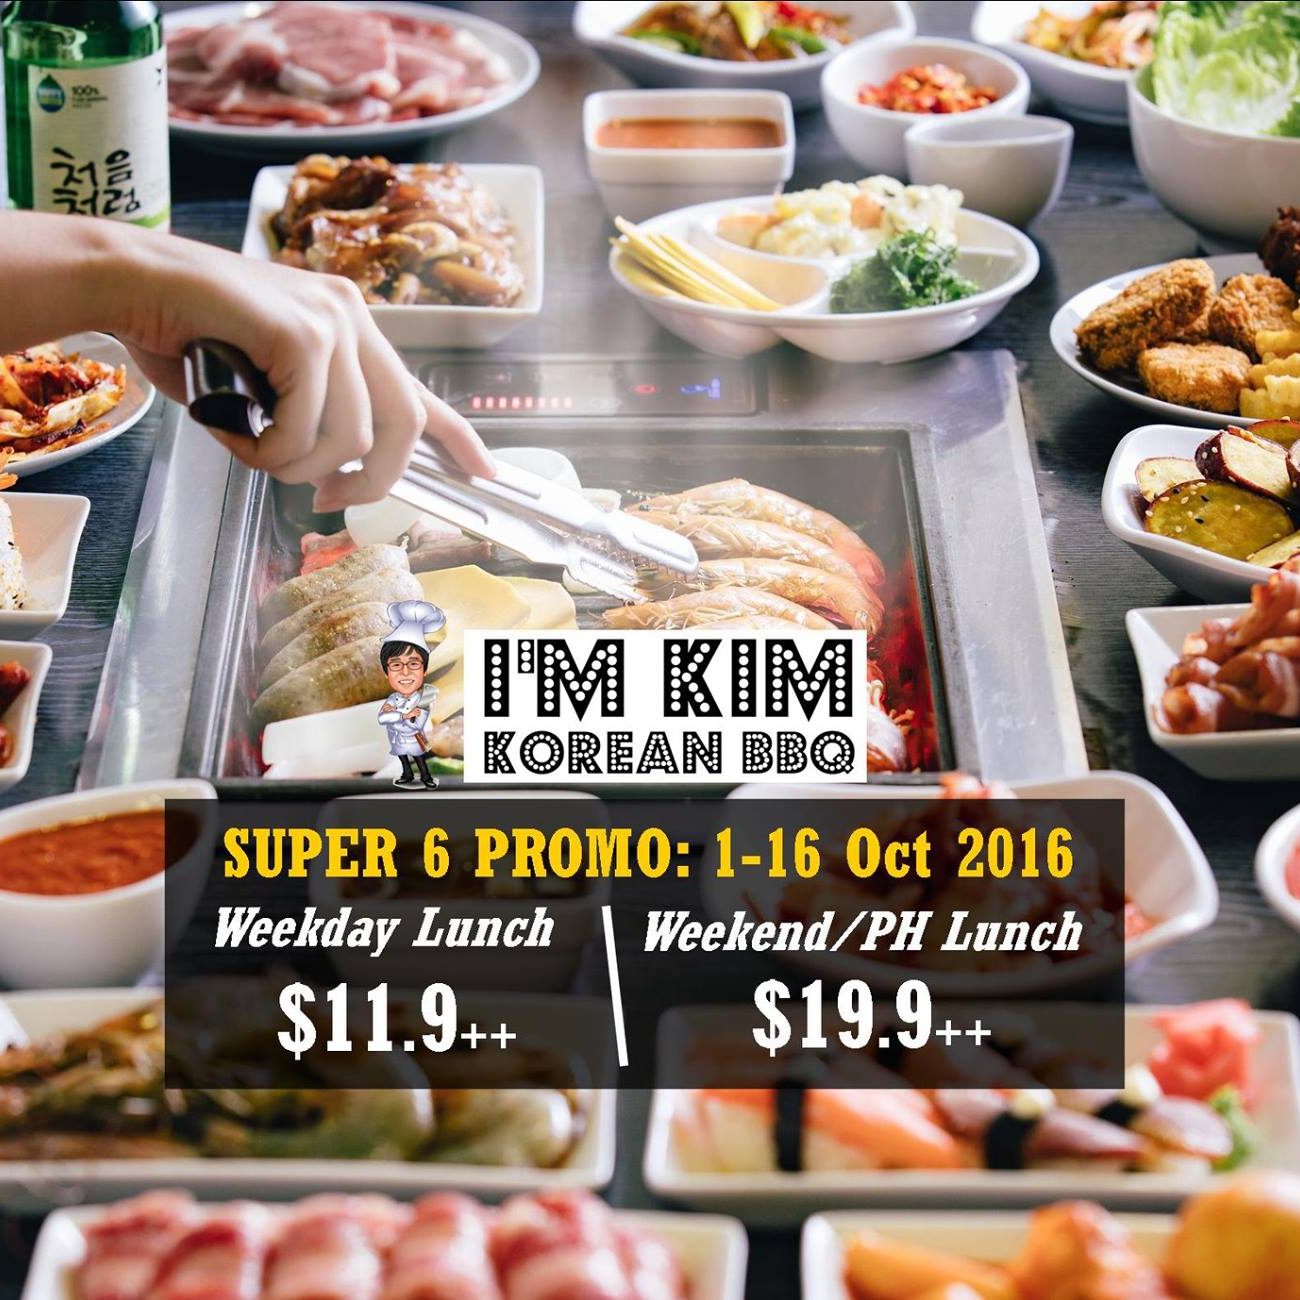 I’m KIM Korean BBQ Singapore Facebook Like & Share Contest ends 16 Oct 2016